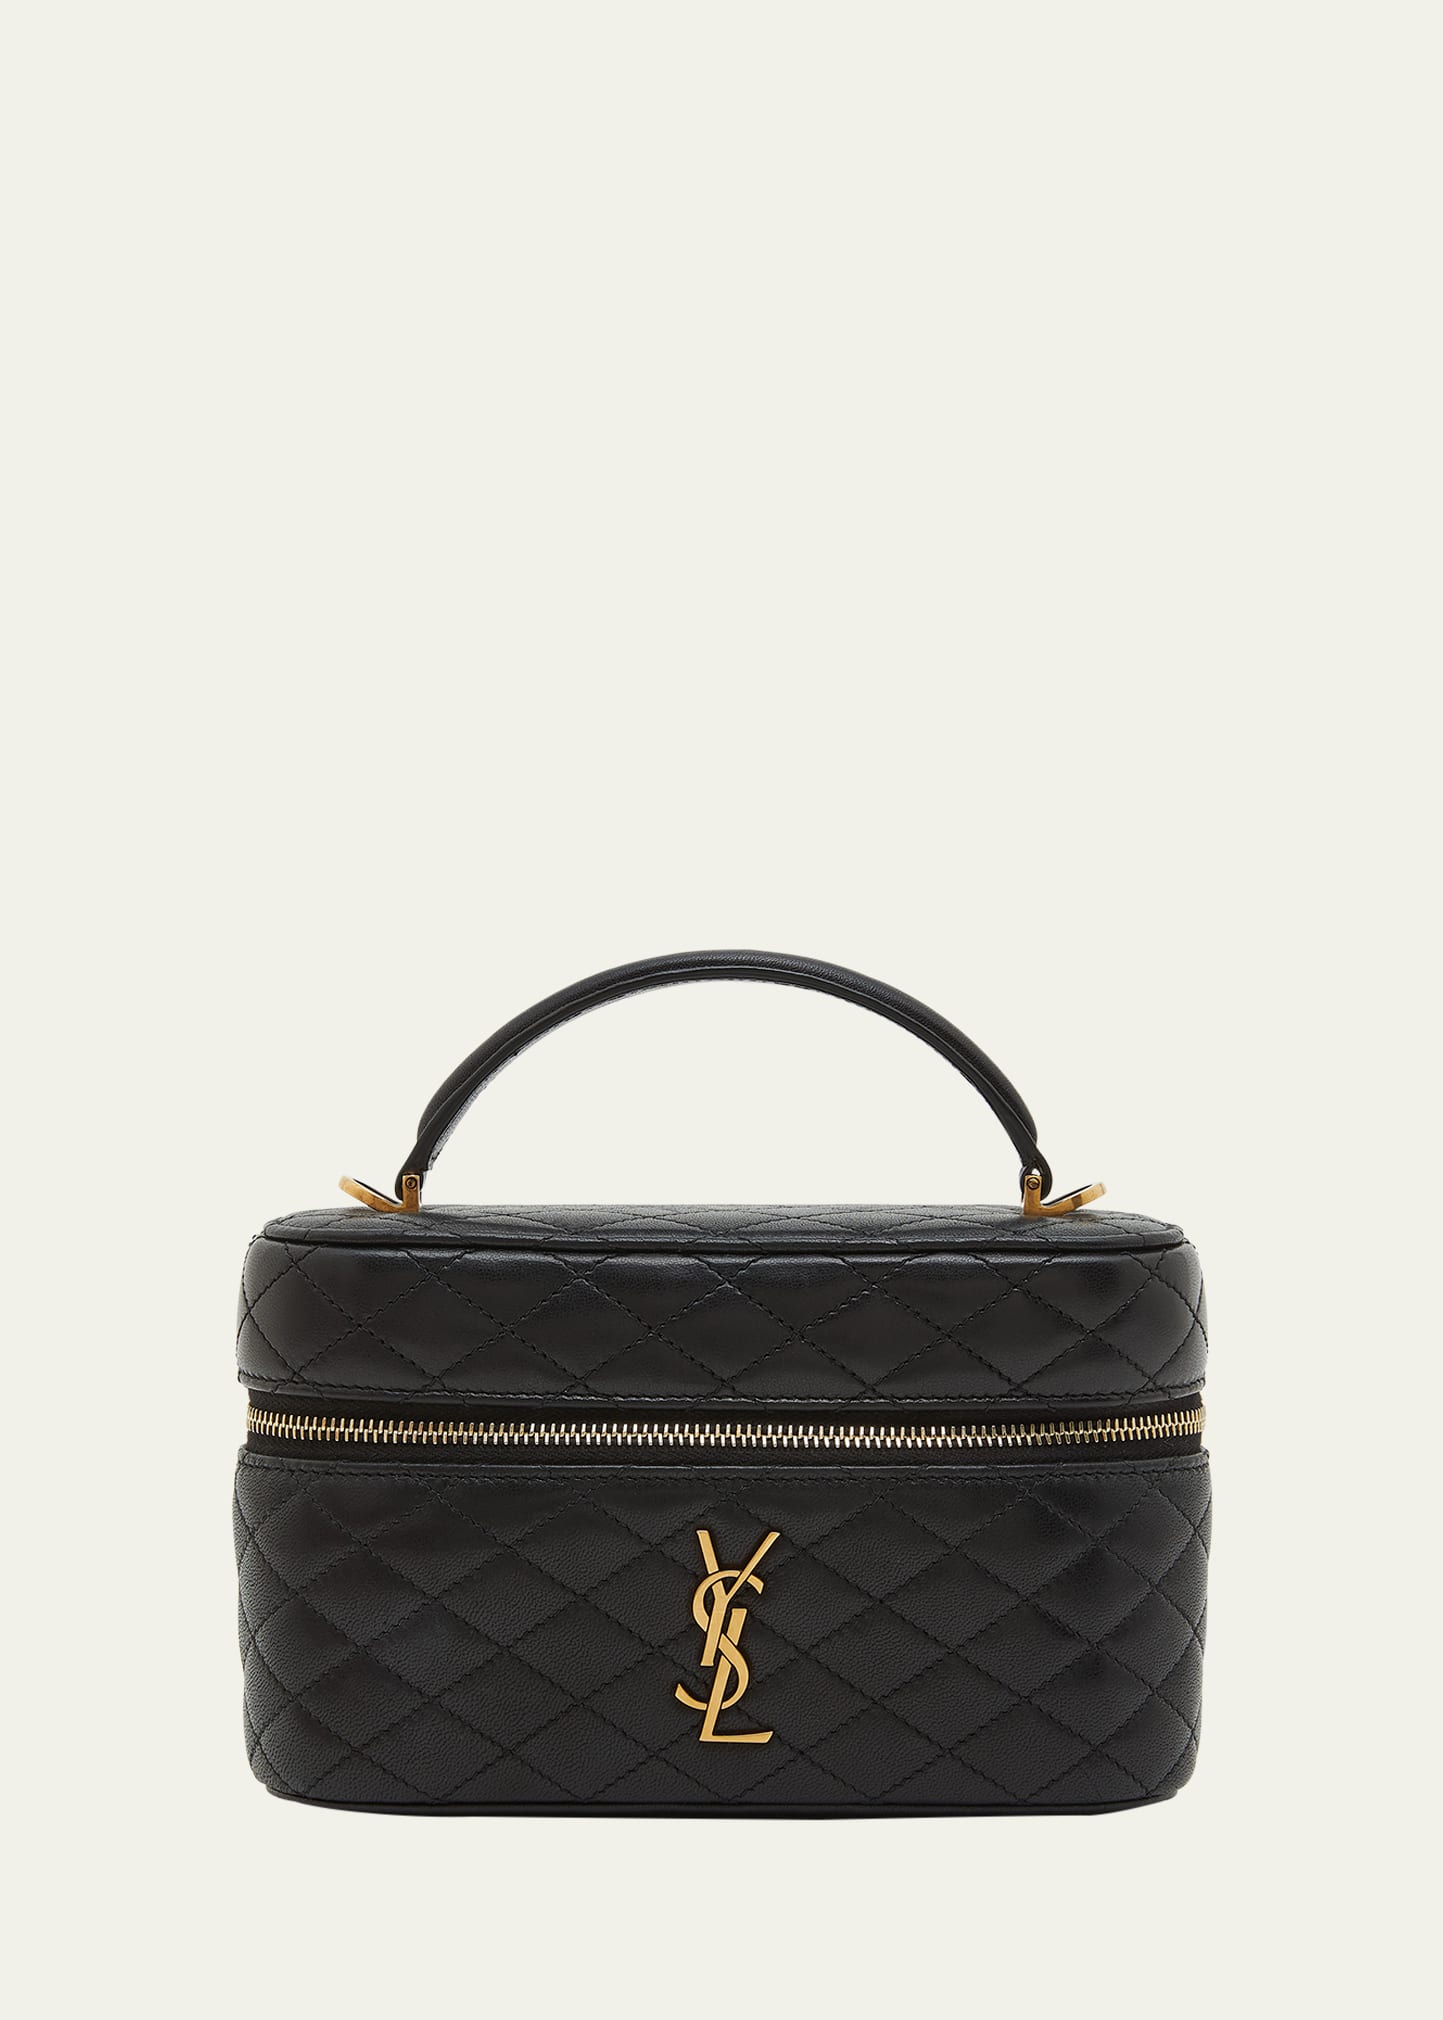 Joe Mini YSL Bucket Bag in Smooth Leather